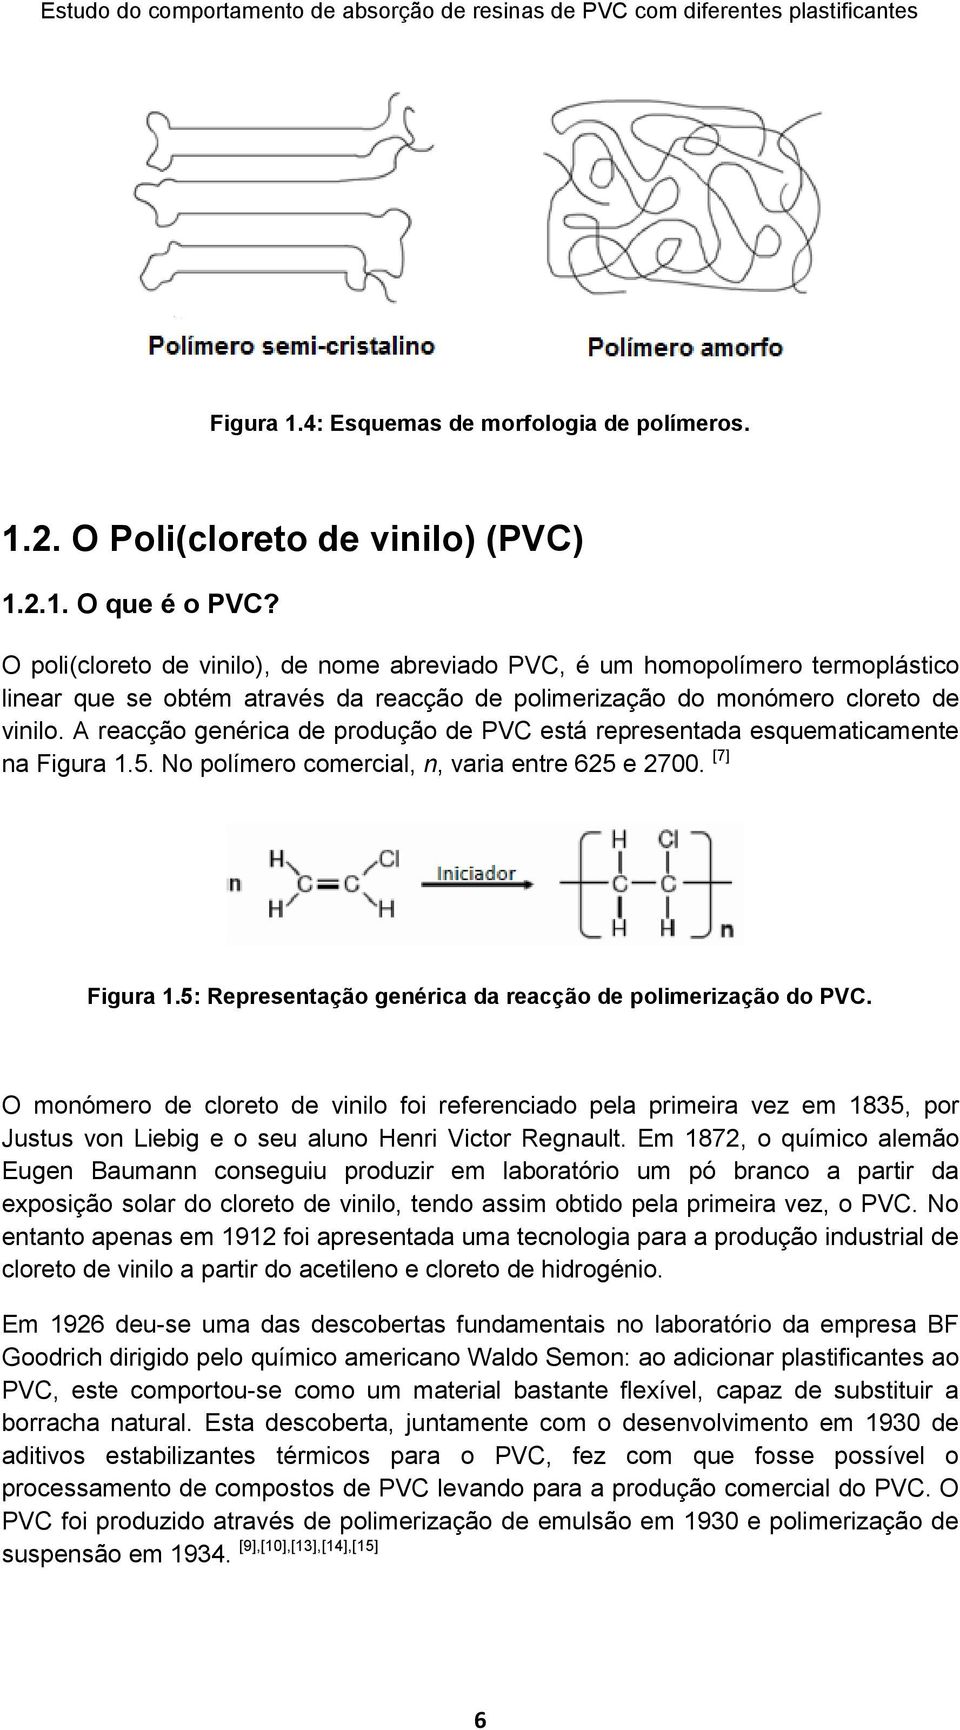 A reacção genérica de produção de PVC está representada esquematicamente na Figura 1.5. No polímero comercial, n, varia entre 625 e 2700. [7] Figura 1.